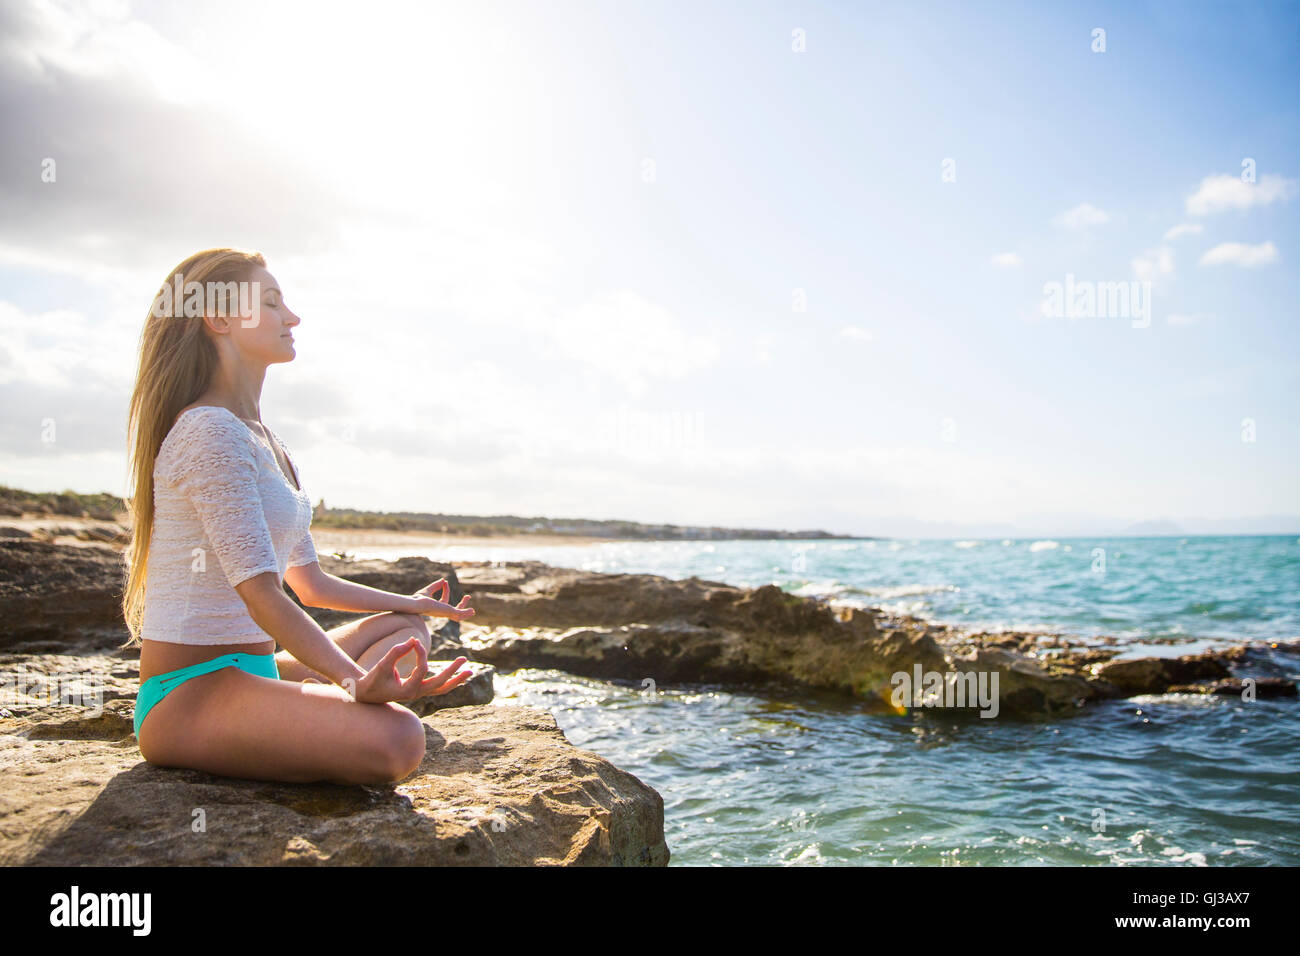 Jeune femme assise sur des rochers en mer, in yoga position Banque D'Images